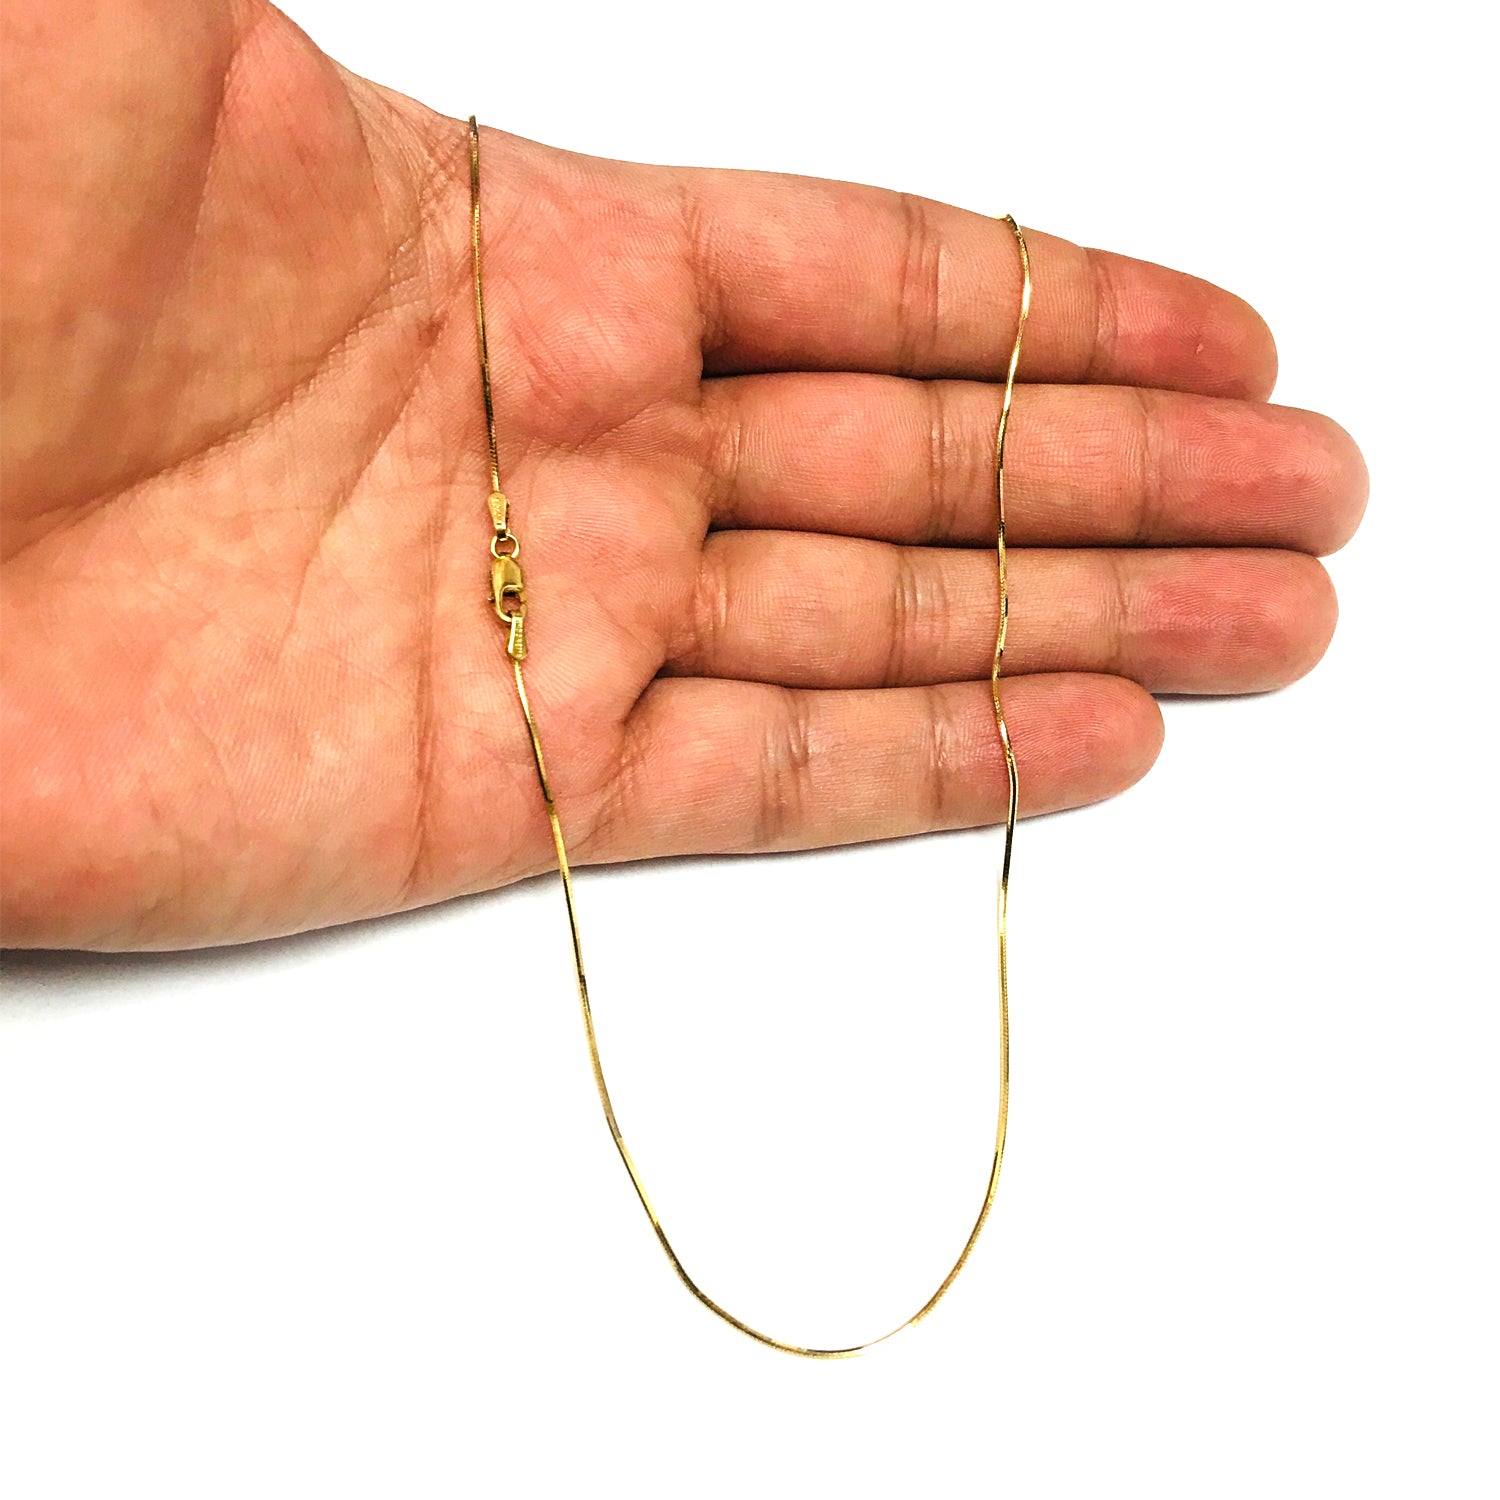 10 k gul guld ottekantet slangekæde halskæde, 0,9 mm, 20" fine designersmykker til mænd og kvinder